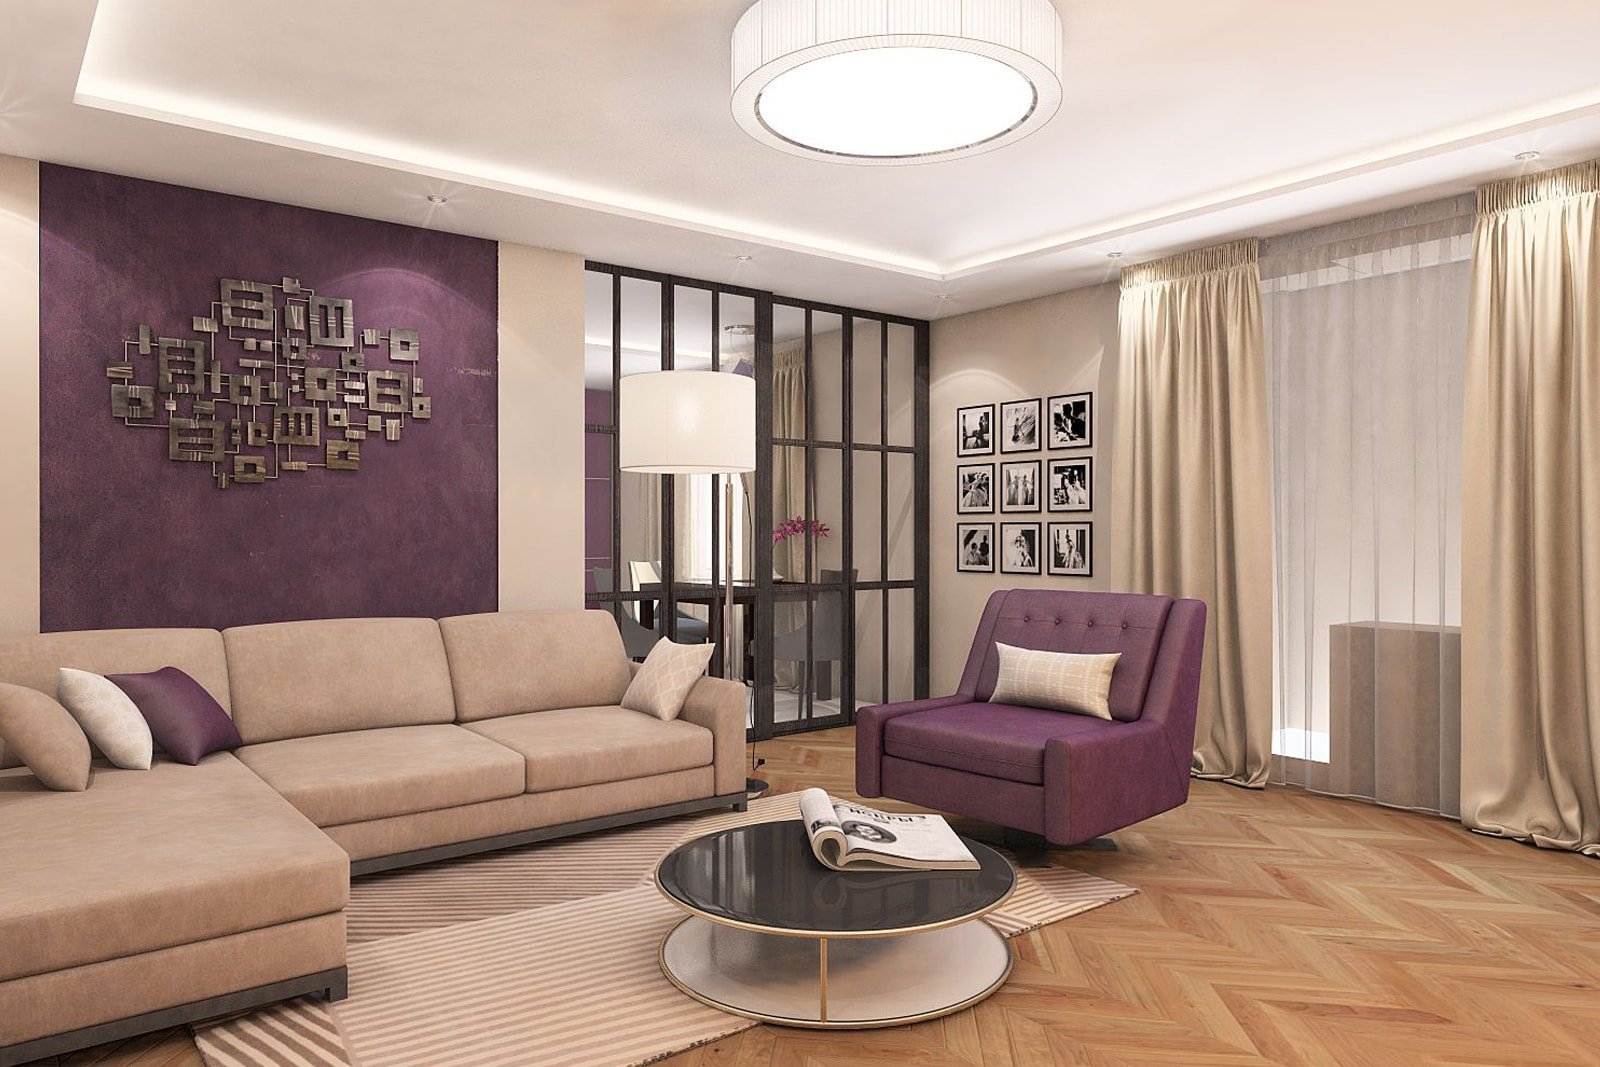 Дизайн проходной гостиной (34 фото): варианты расстановки мебели и зонирование